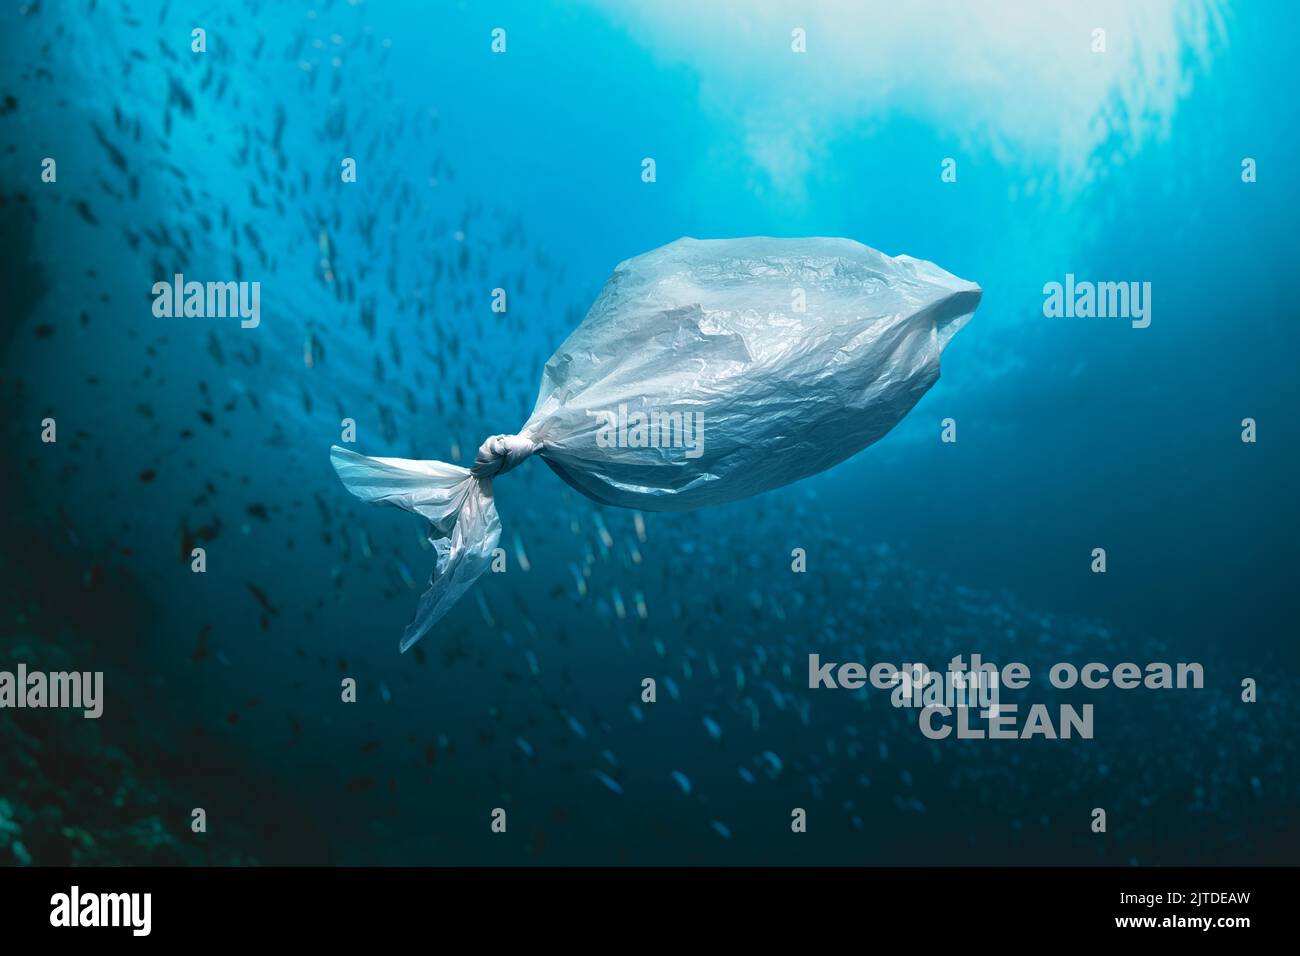 Plastiktüte schwimmt im Meer - HALTEN SIE DEN OZEAN SAUBER Stockfoto